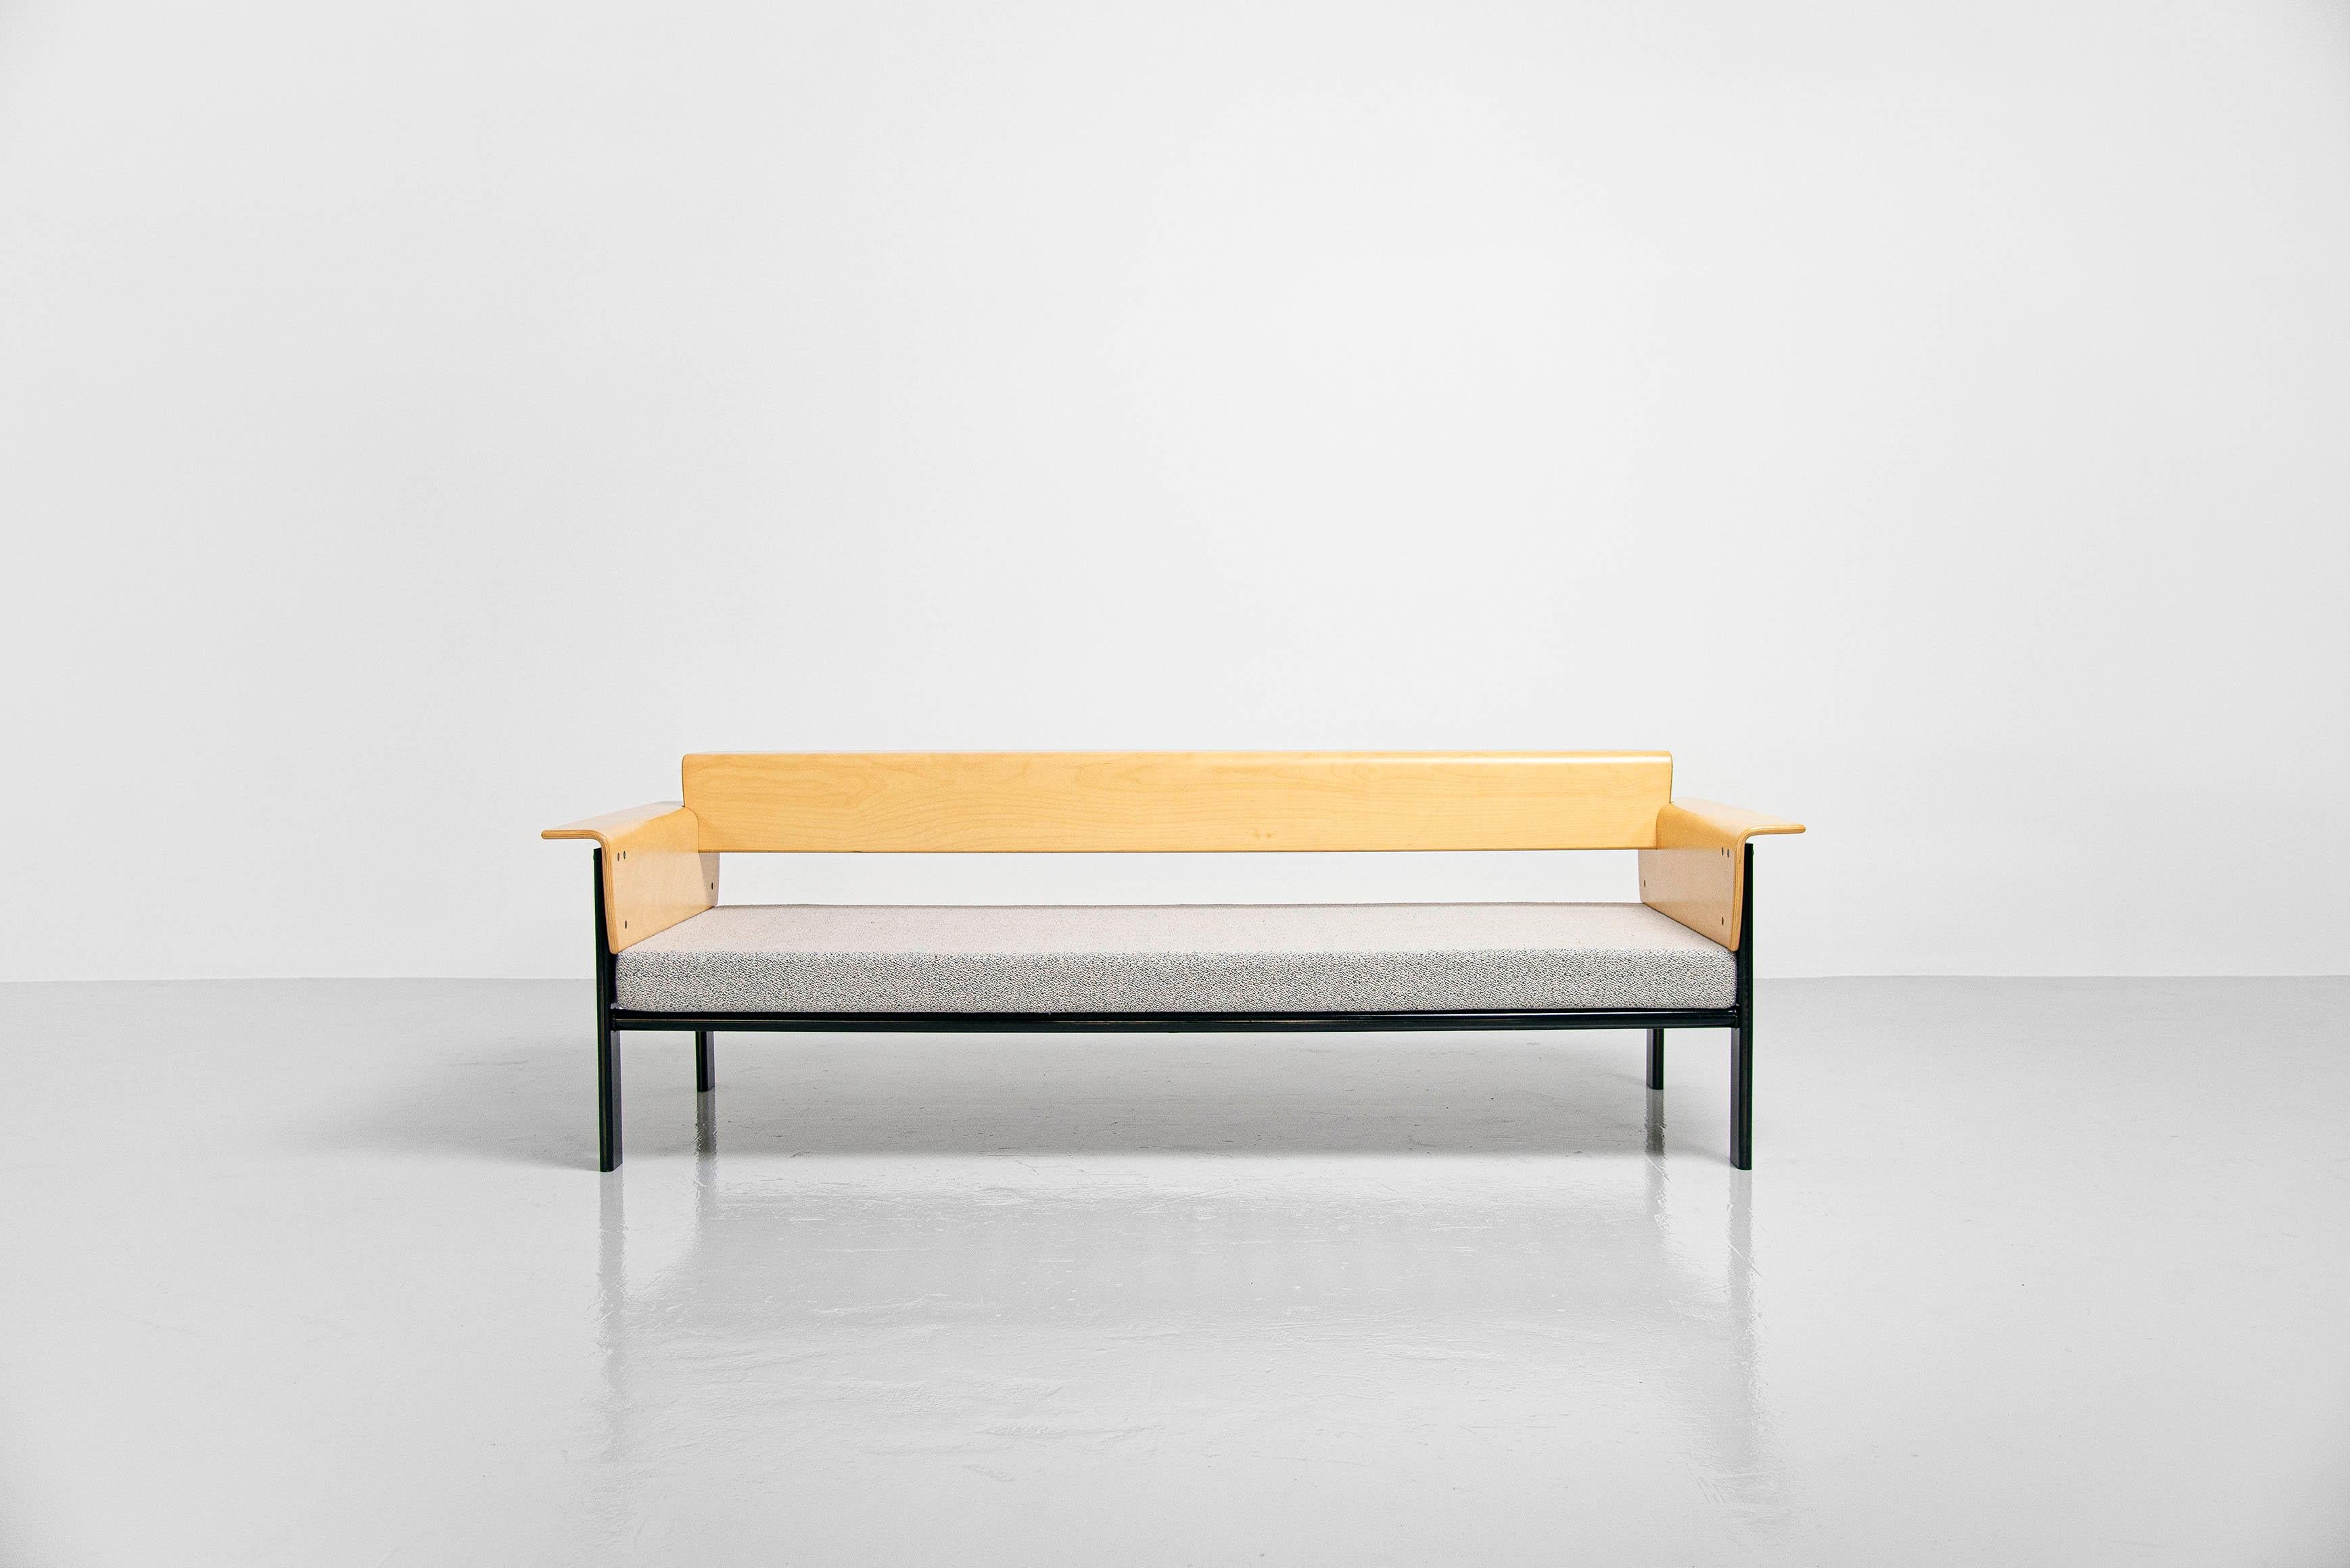 Sehr seltenes und schönes Sofa 'Mastro', entworfen vom Duo Afra und Tobia Scarpa und hergestellt von Molteni 1981. Dieses supergeformte Daybed hat einen schwarz lackierten Metallrahmen und Sperrholz-Arme und Rückenlehne. Die Rückenlehne kann